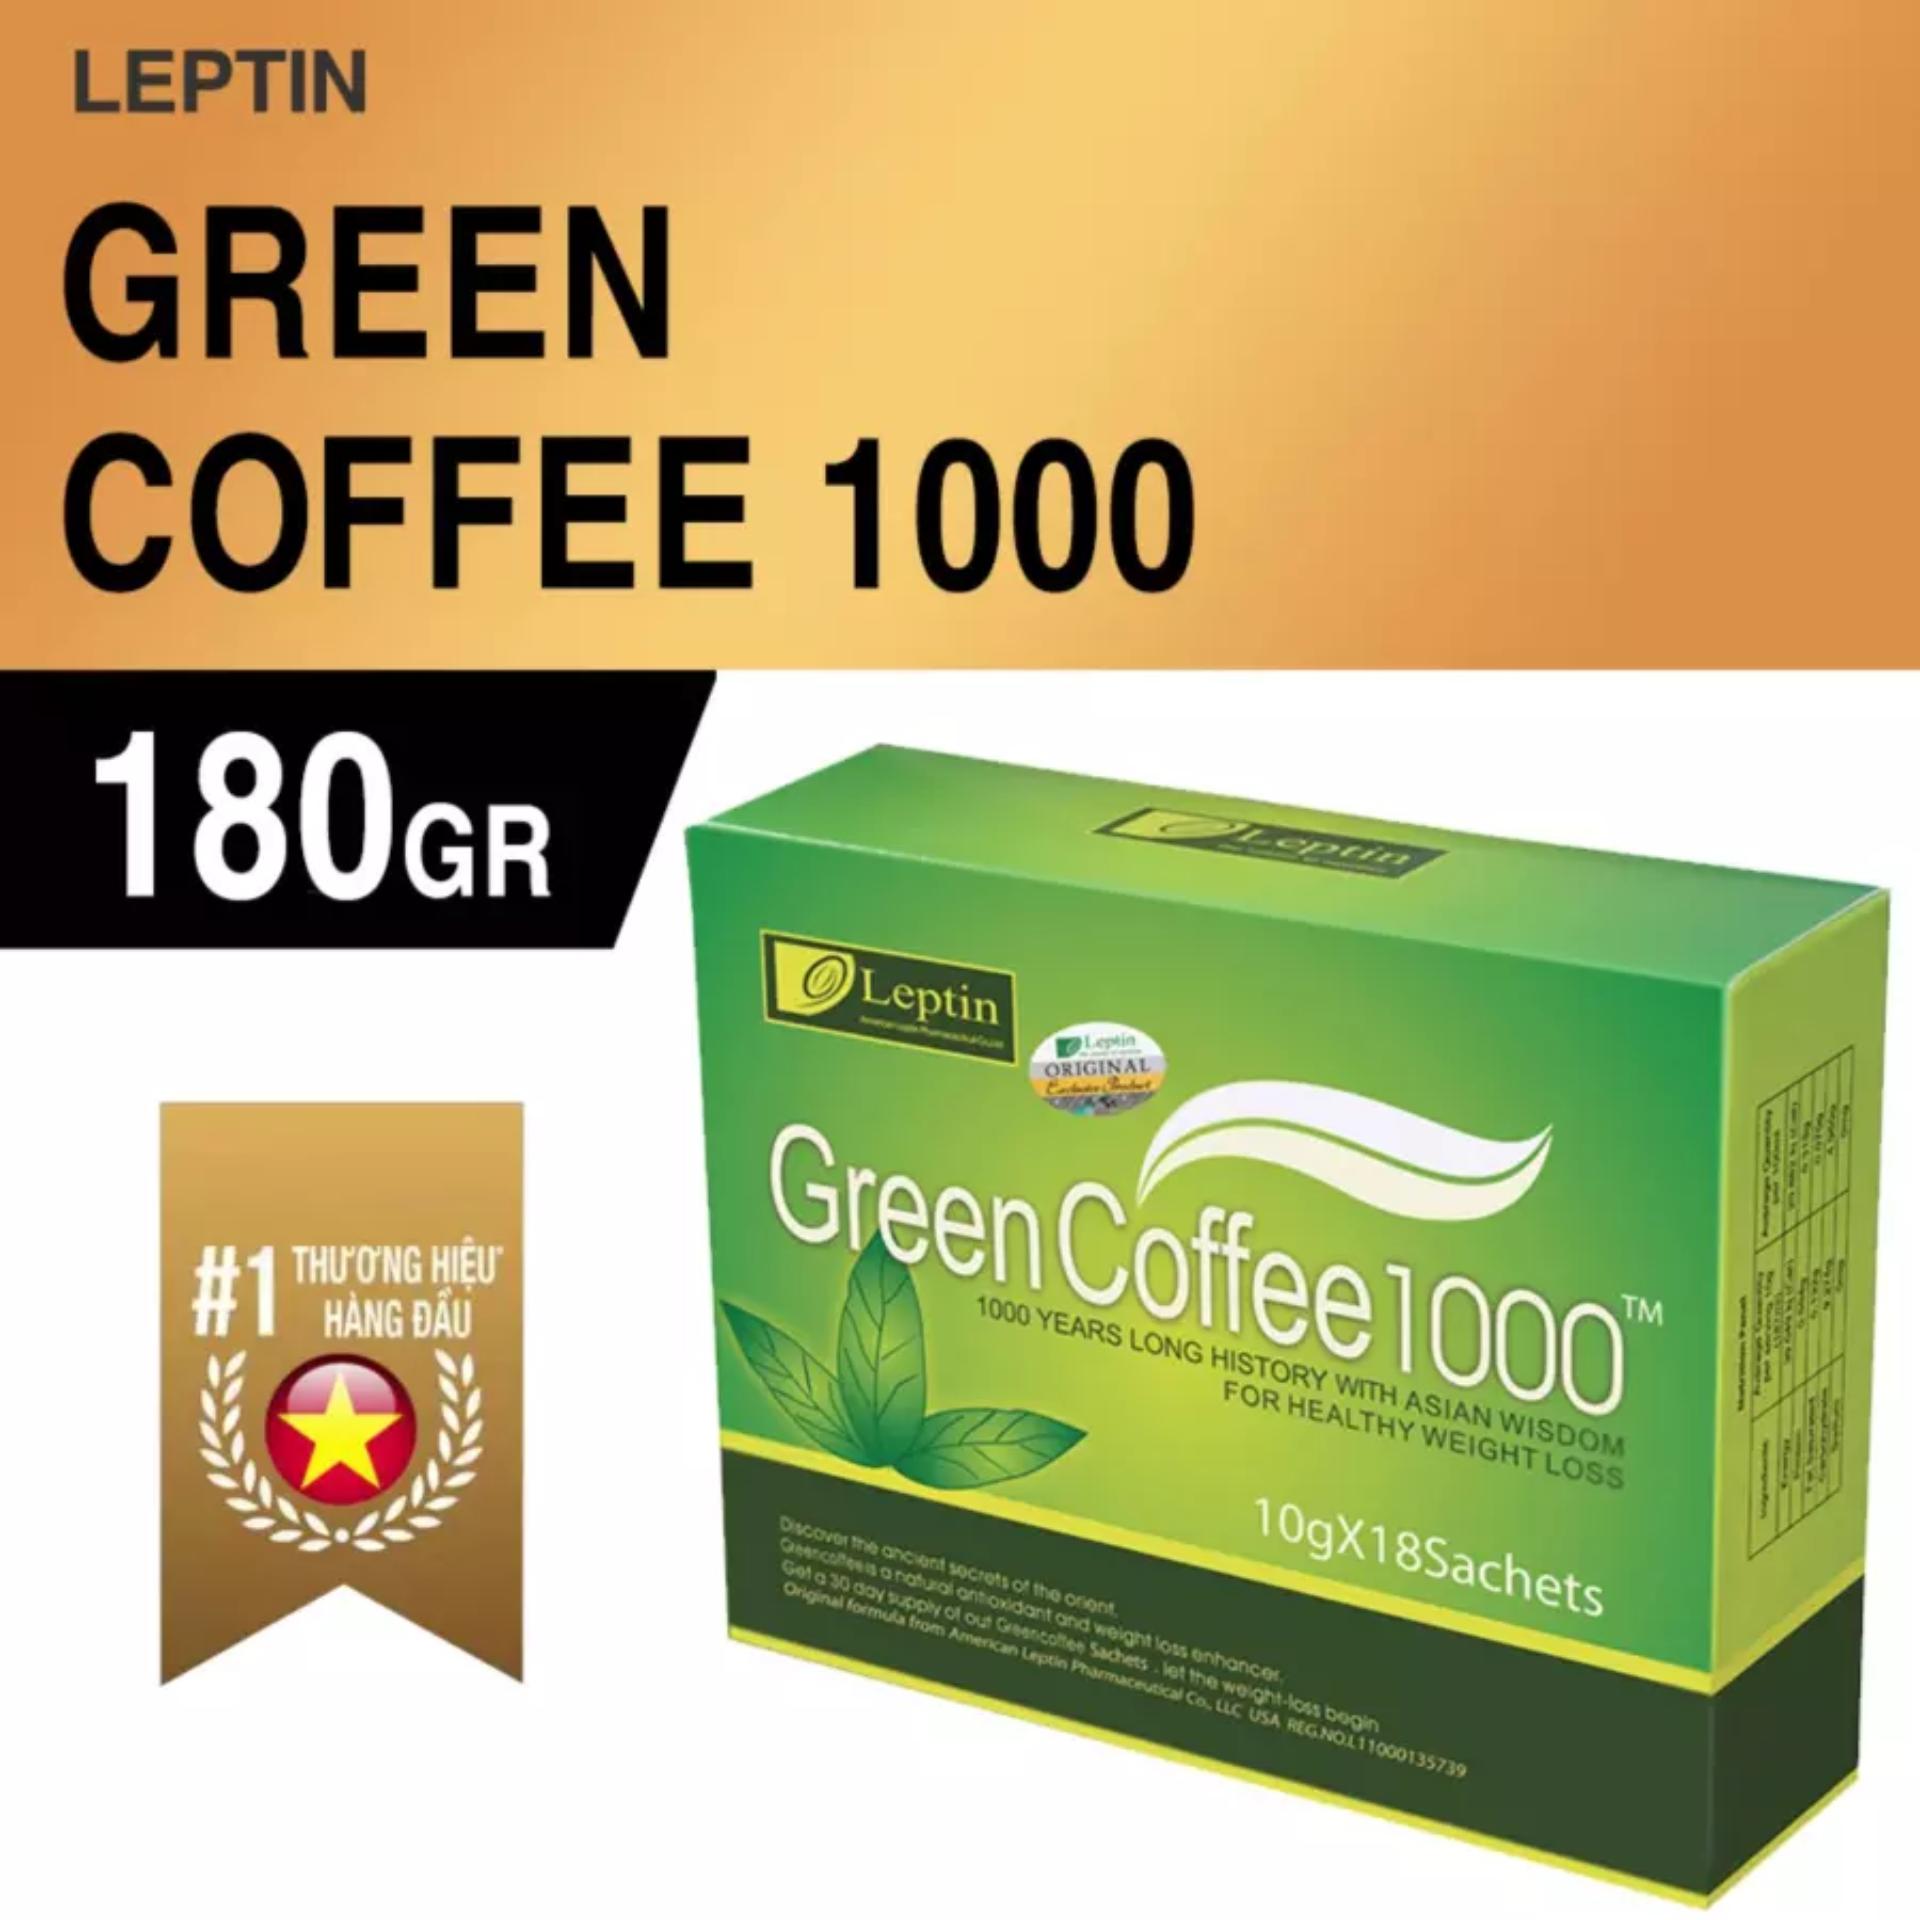 Bộ 2 hộp Coffee giảm cân Green Coffee 1000 chính hãng từ Mỹ